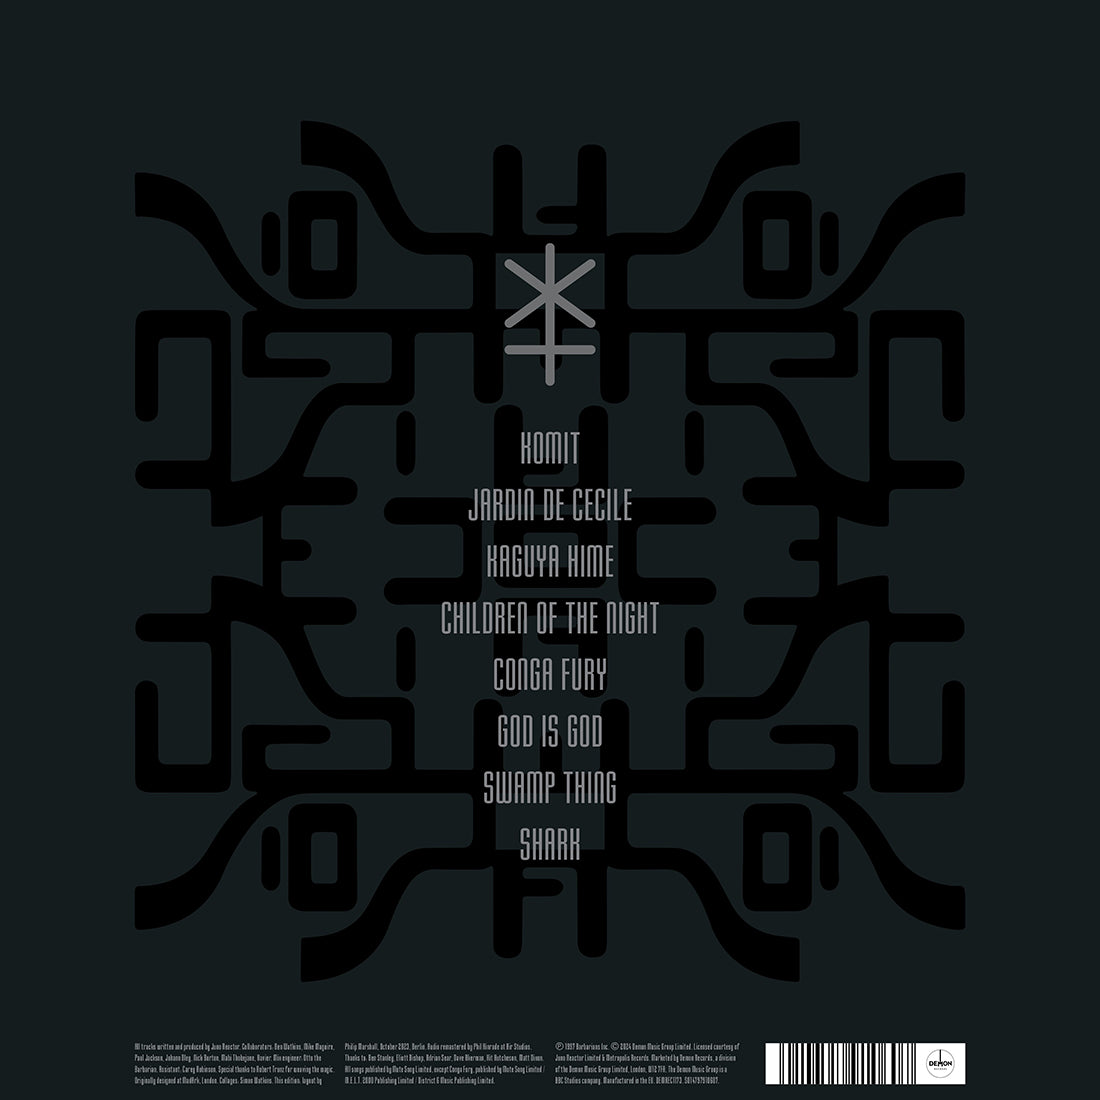 Juno Reactor - Bible Of Dreams: Vinyl 2LP